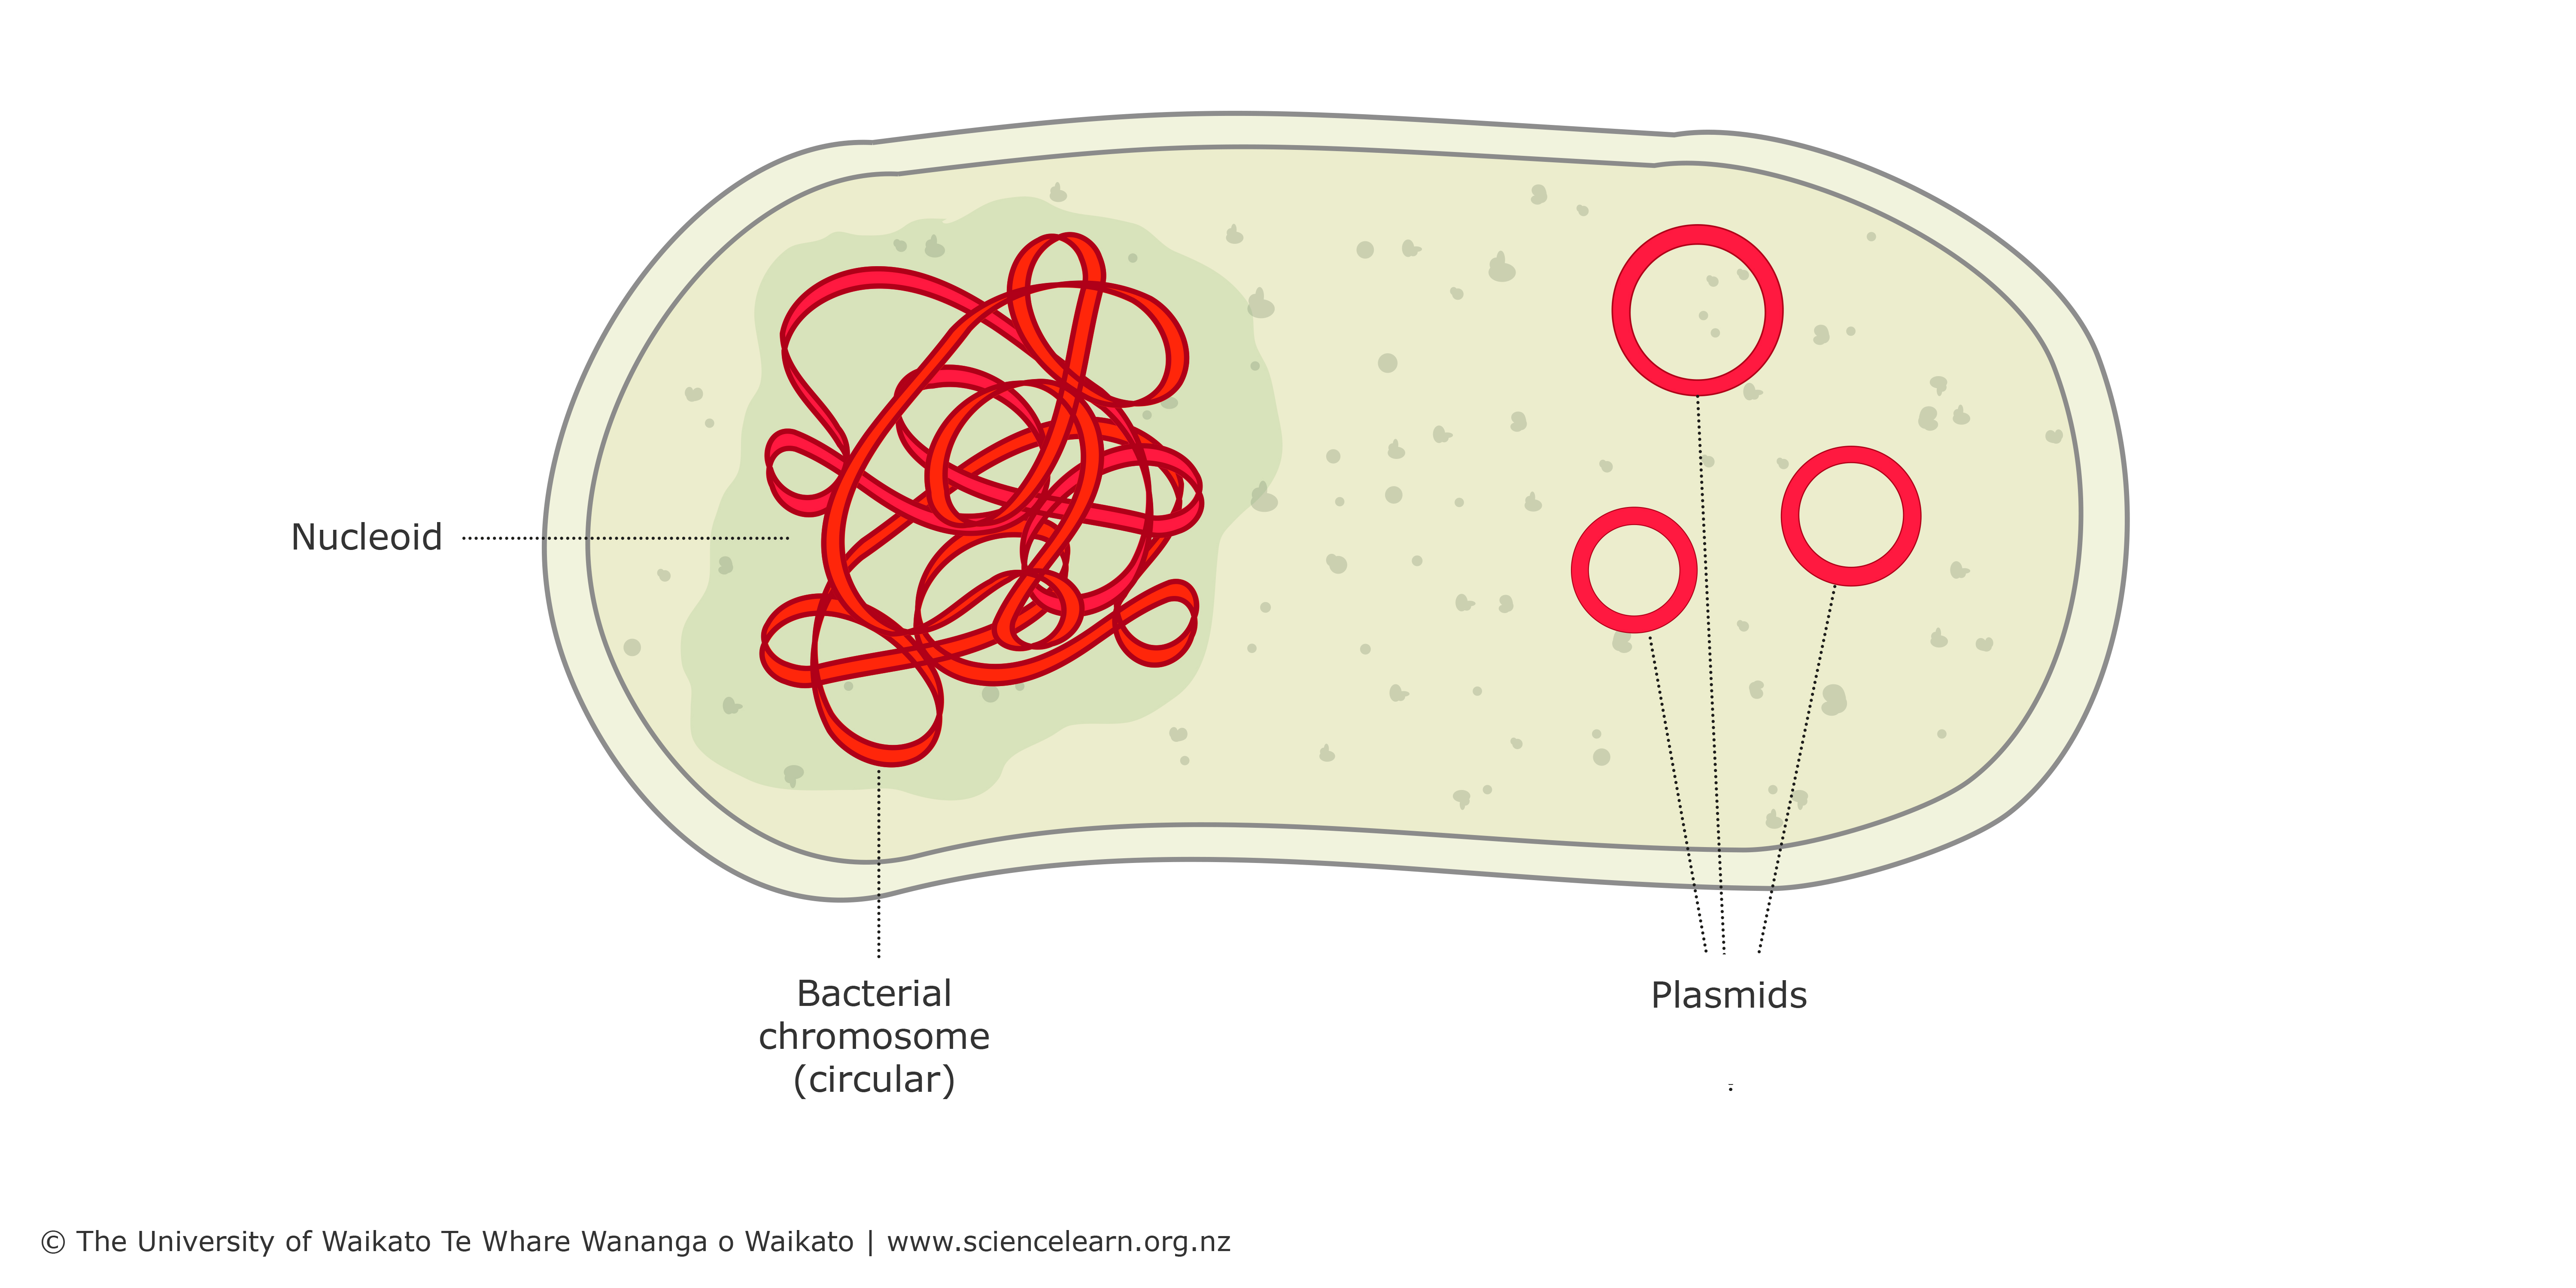 plasmid dna in bacteria